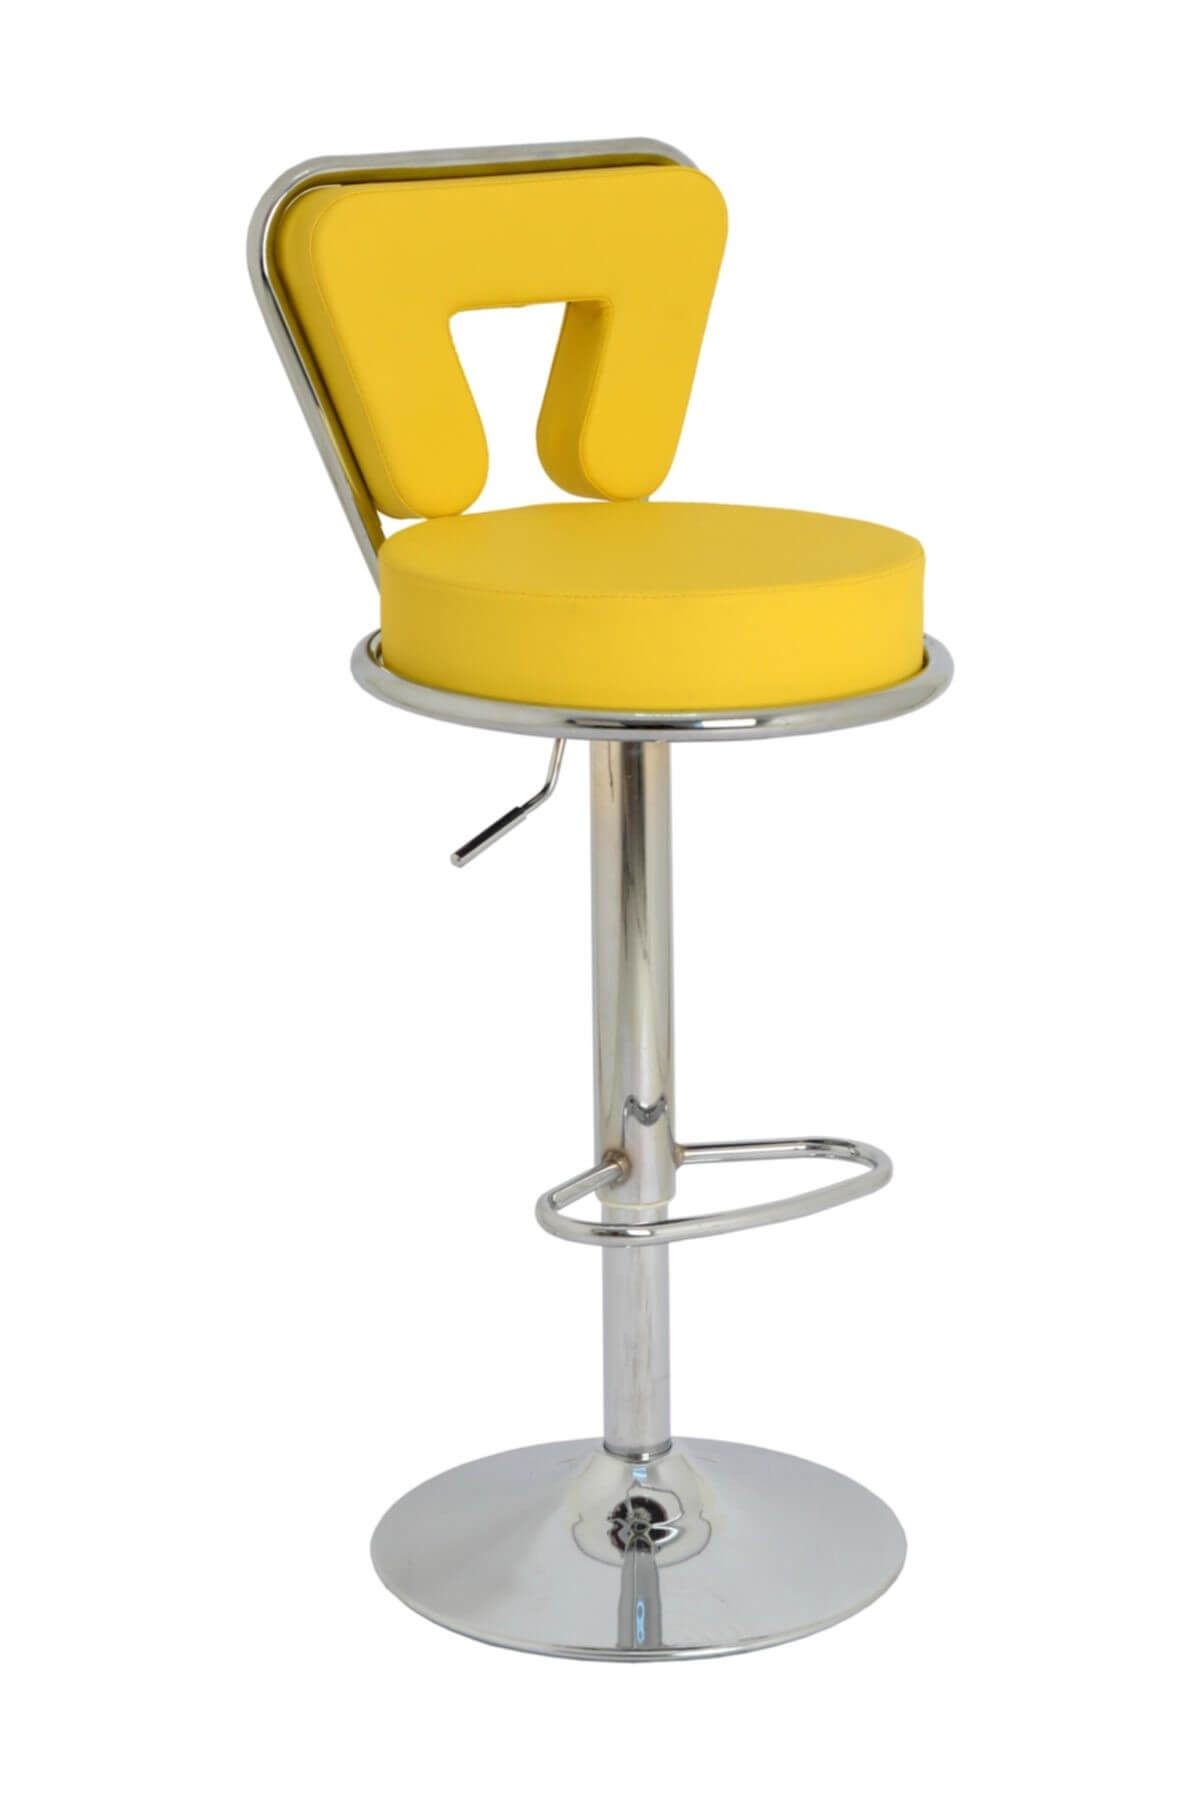 Bürocci Virago Bar Sandalyesi - Sarı Deri - 9540s0113